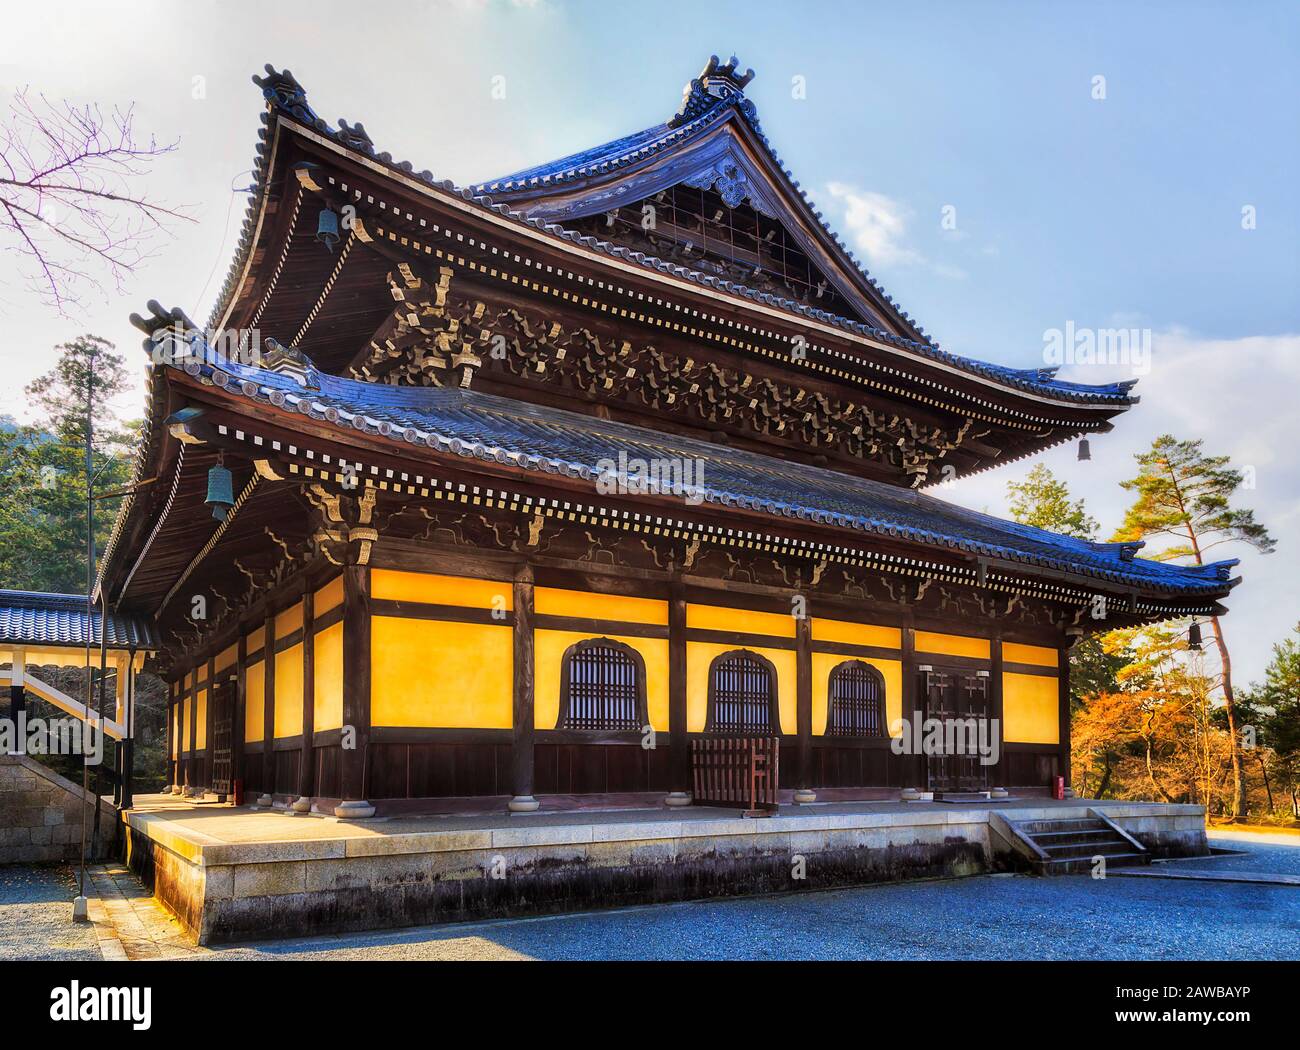 Traditionelles historisches japanisches Tempelgebäude in der Altstadt von Kyoto an einem sonnigen Tag - Nanzeji-Tempel. Stockfoto